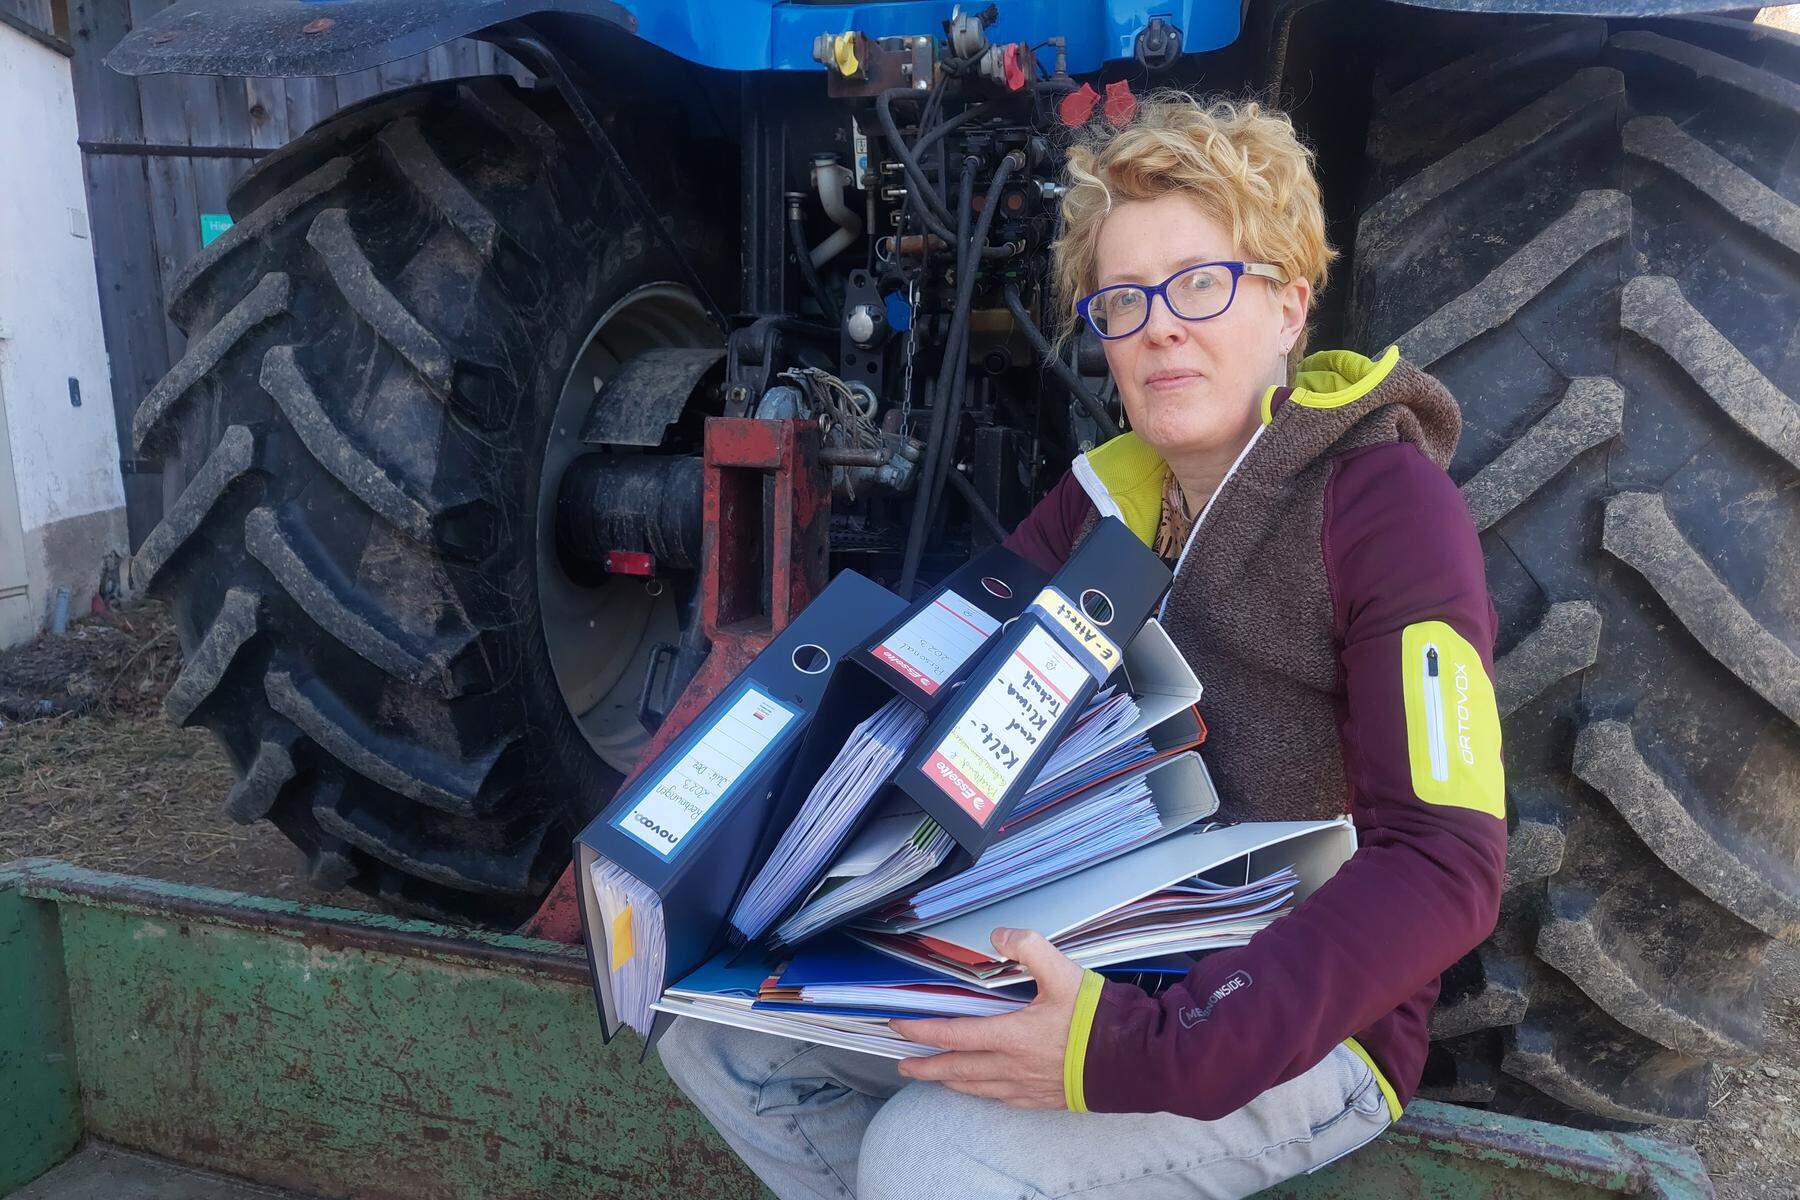 Kosten, Bürokratie und Auflagen | Landwirtin Waltraud Froihofer: „Die Zettelwirtschaft treibt viele Bauern ins Burnout“ 